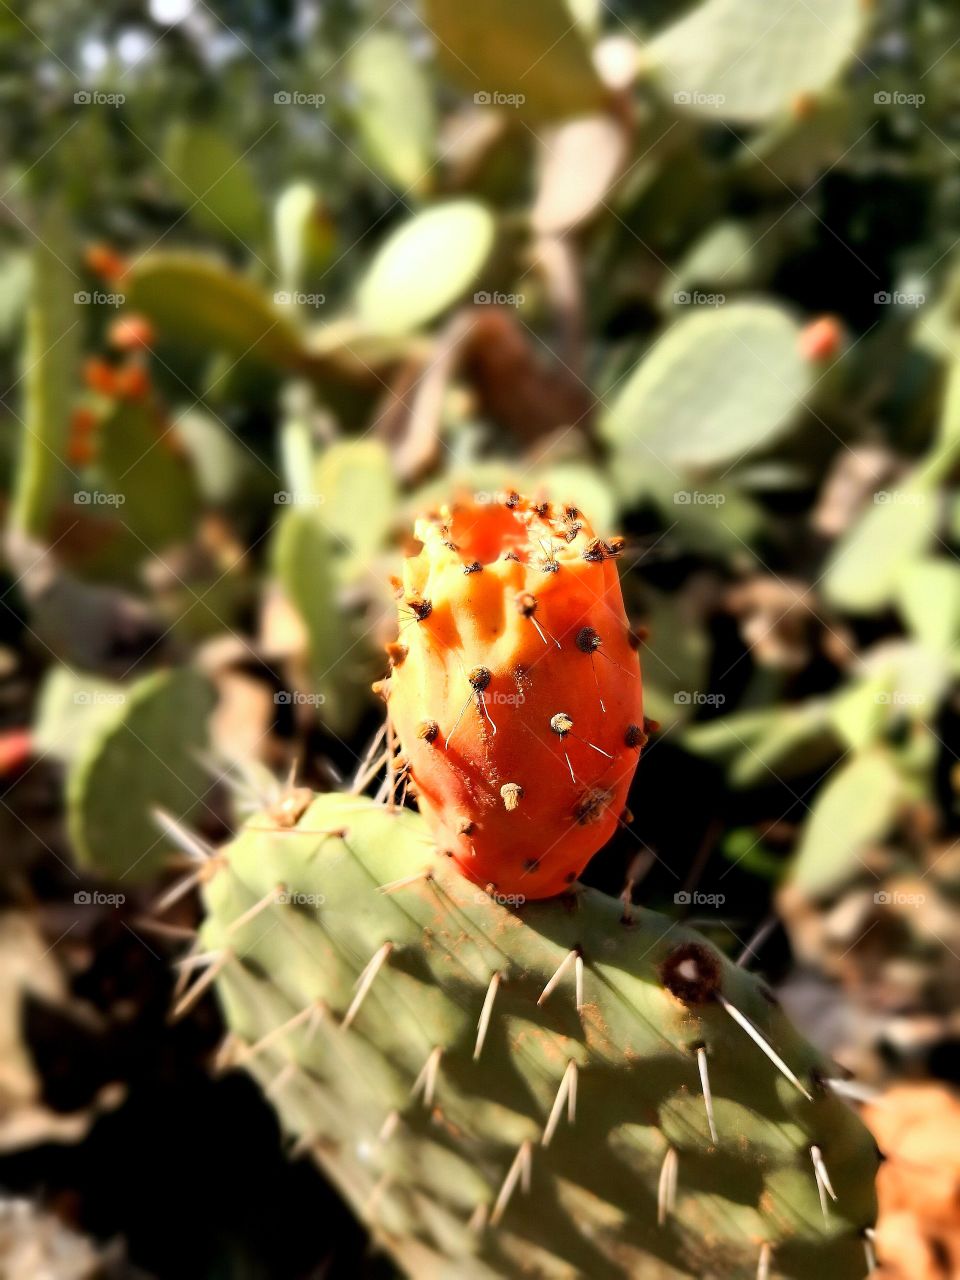 delicious prickly pear cactus summer fruit on a countryside garden